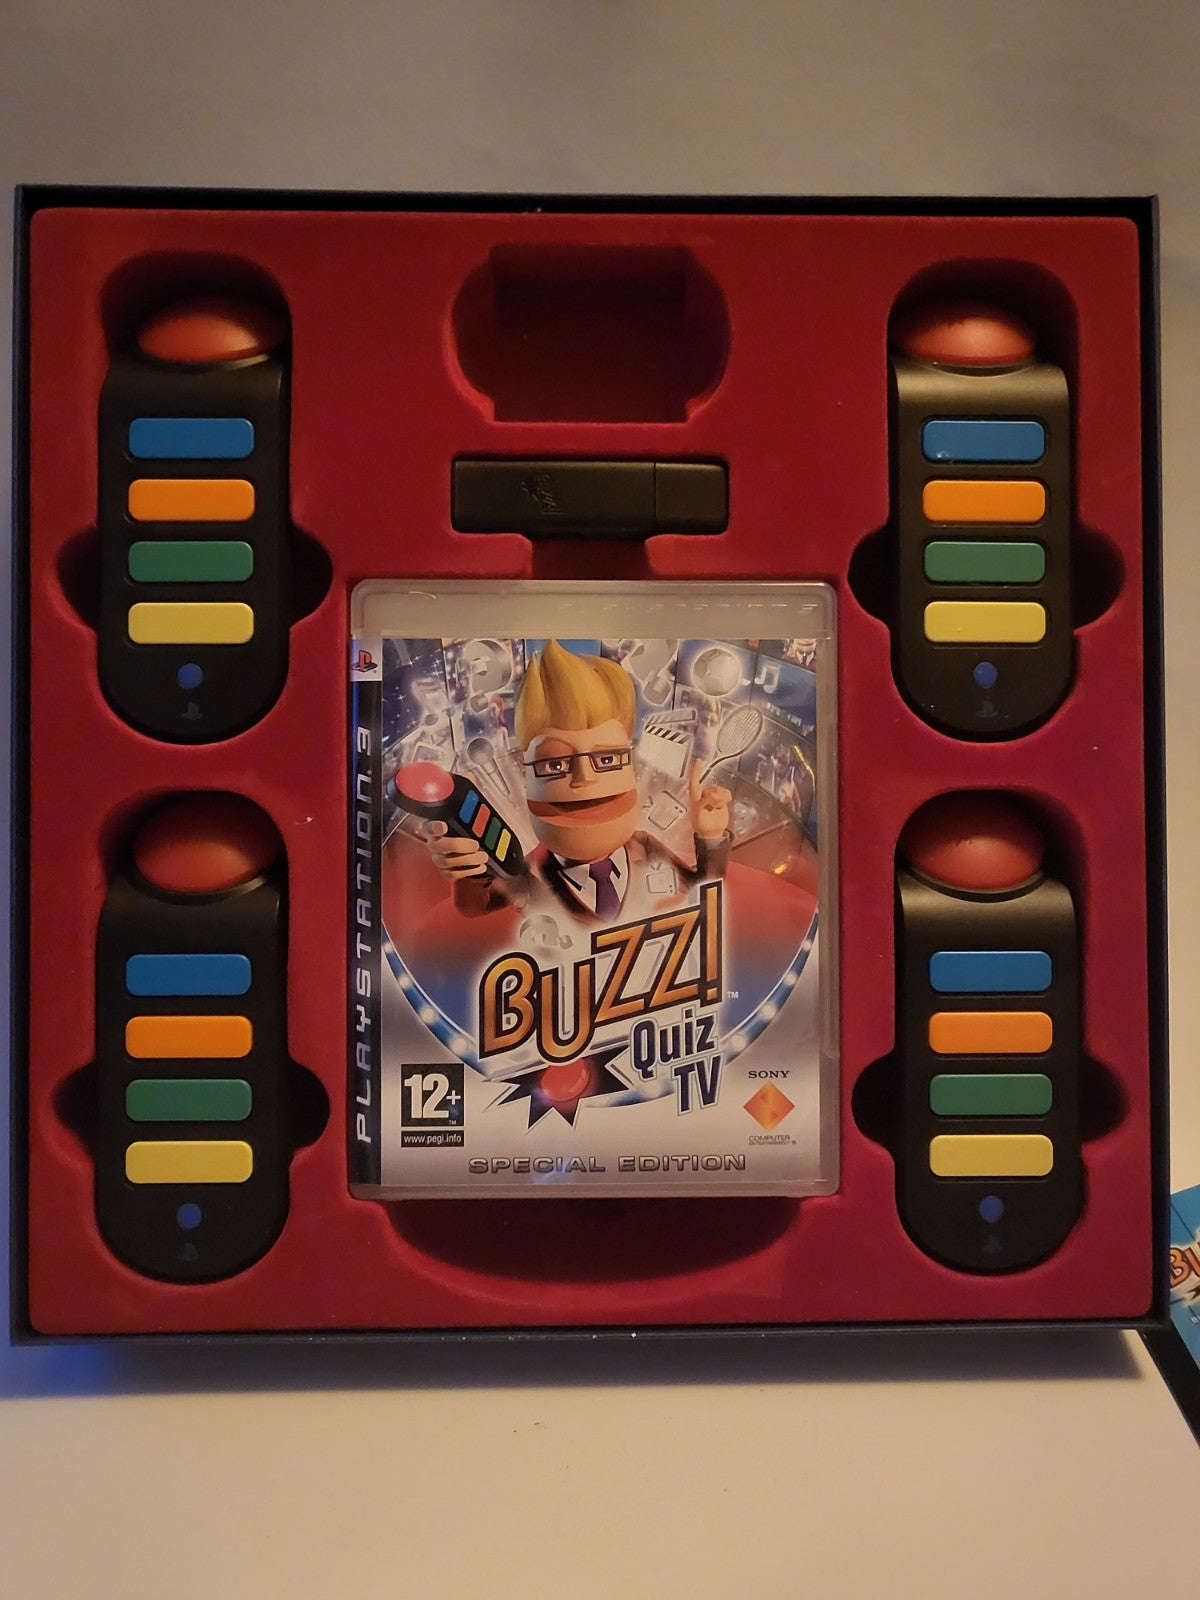 Buzz! Quiz Tv Special Edition in doos Playstation 3